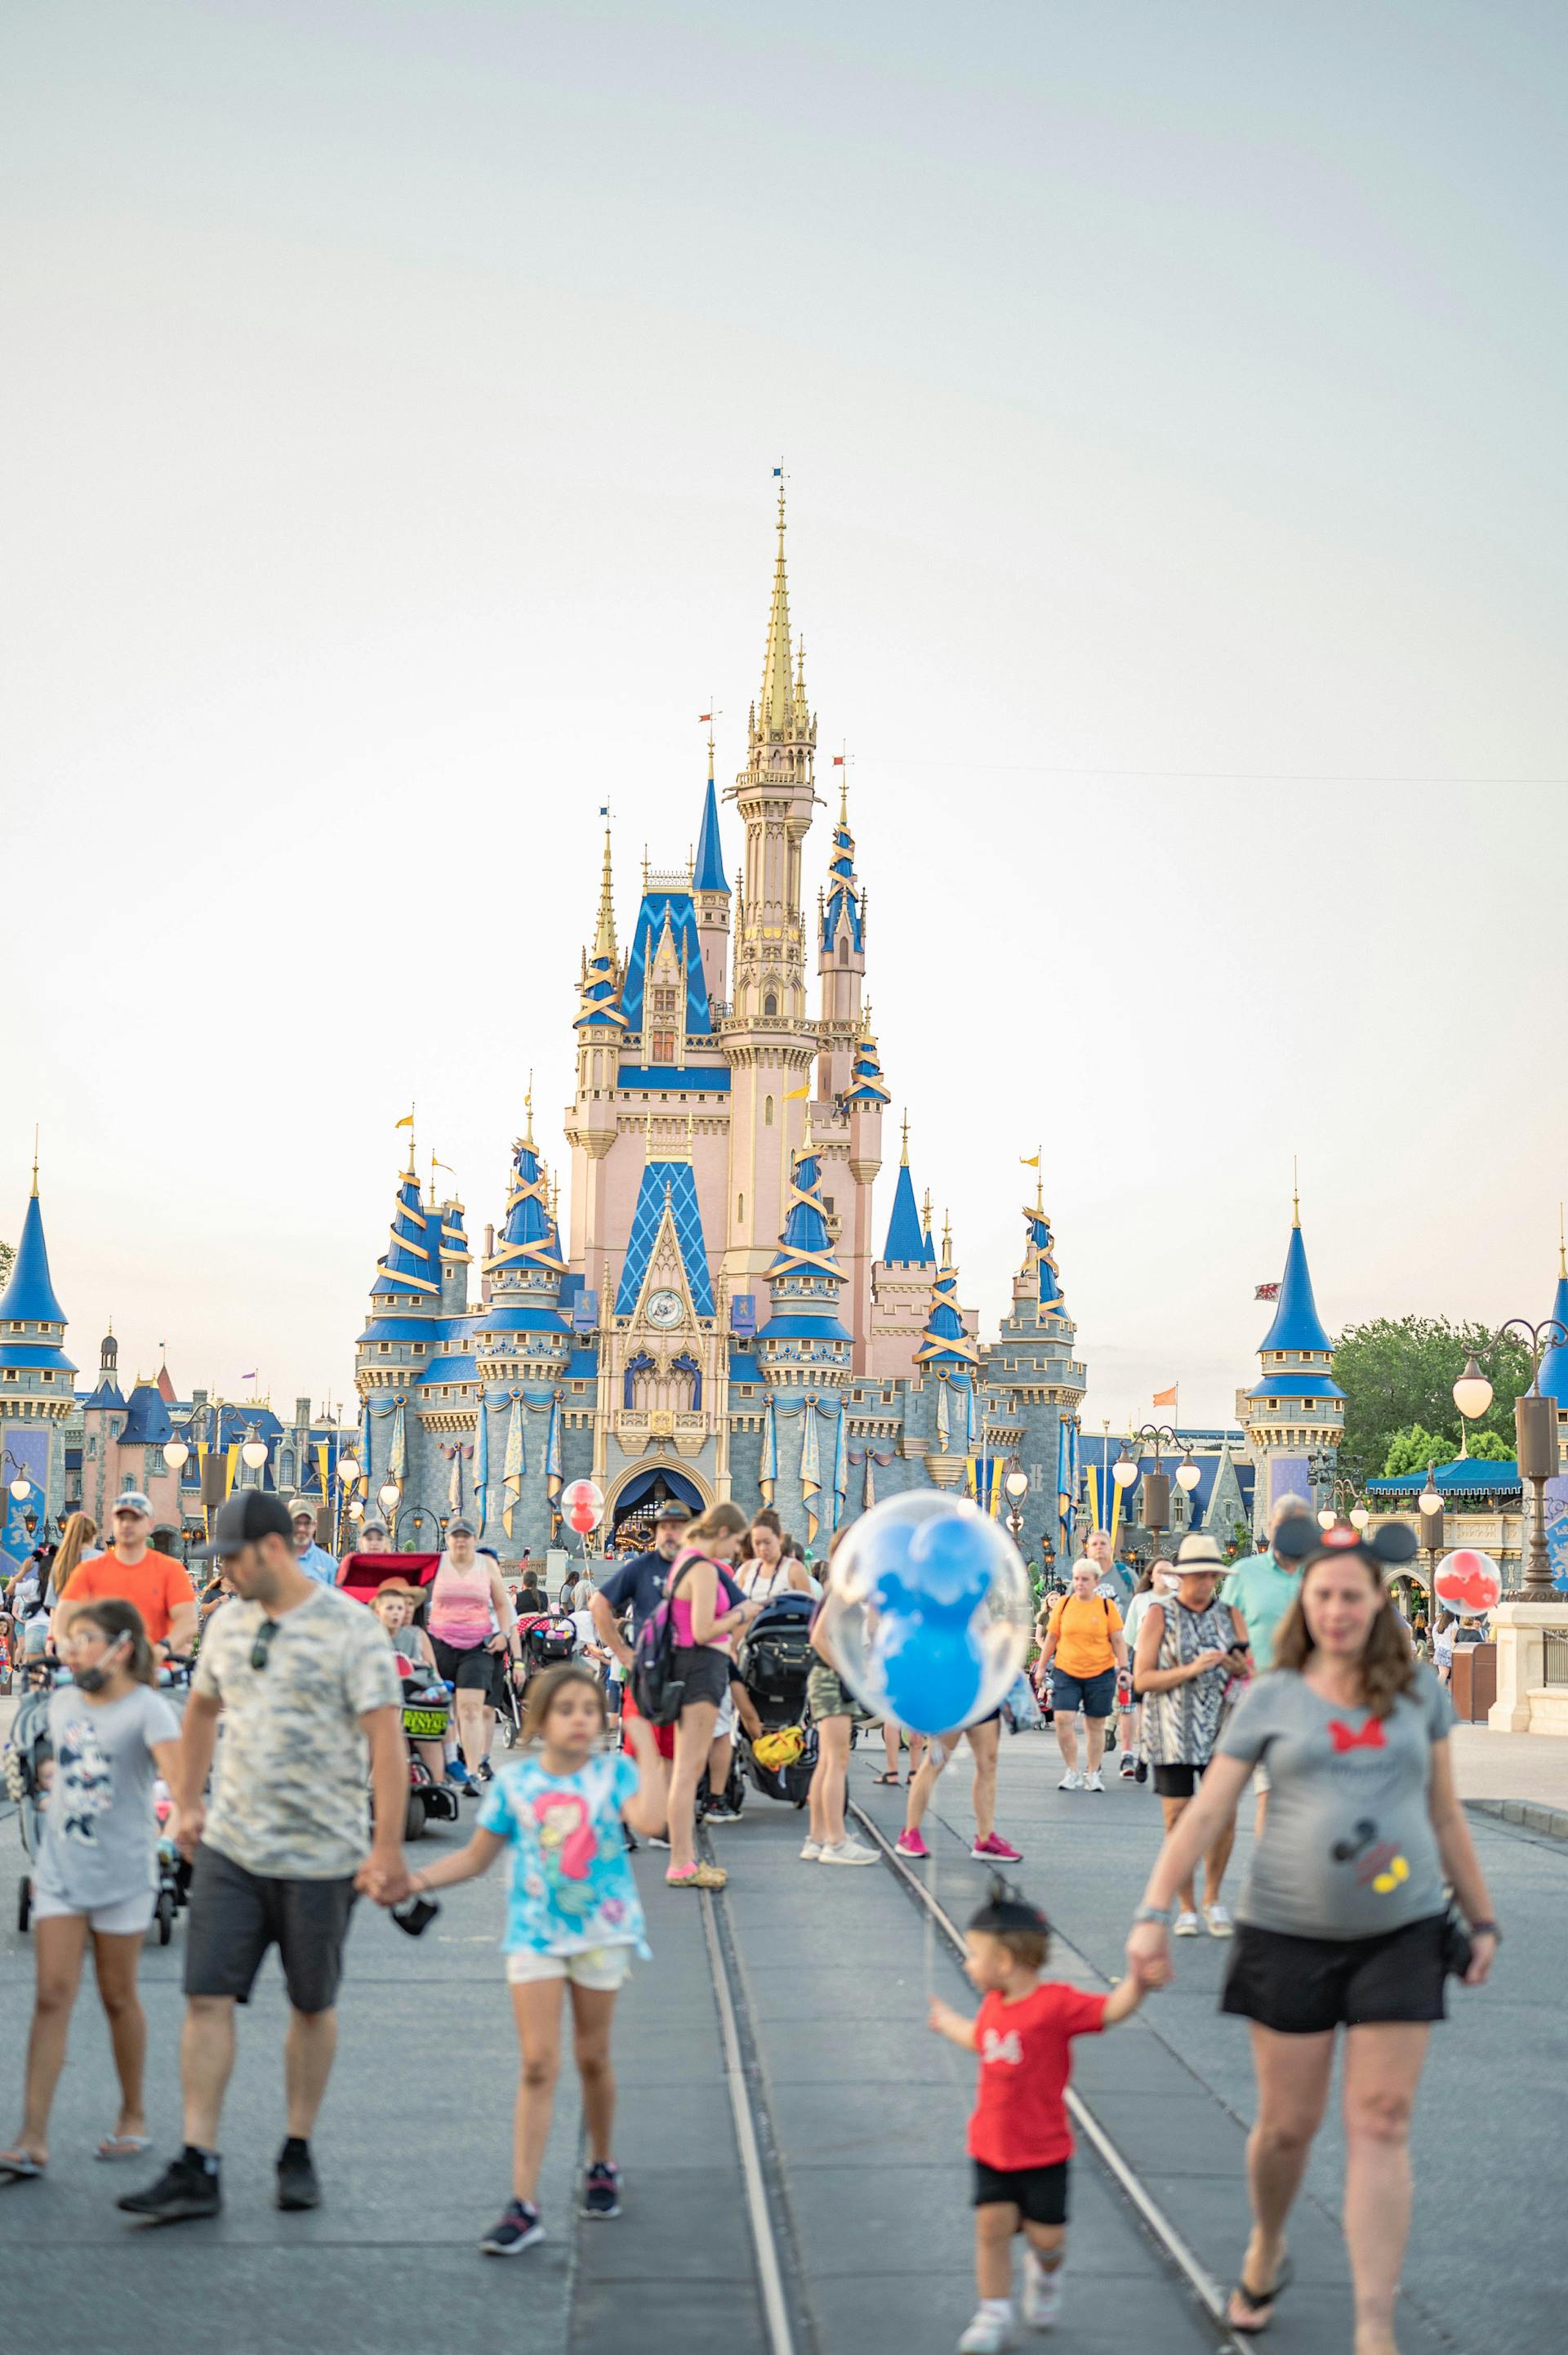 People walking near a Disney castle | Source: Pexels